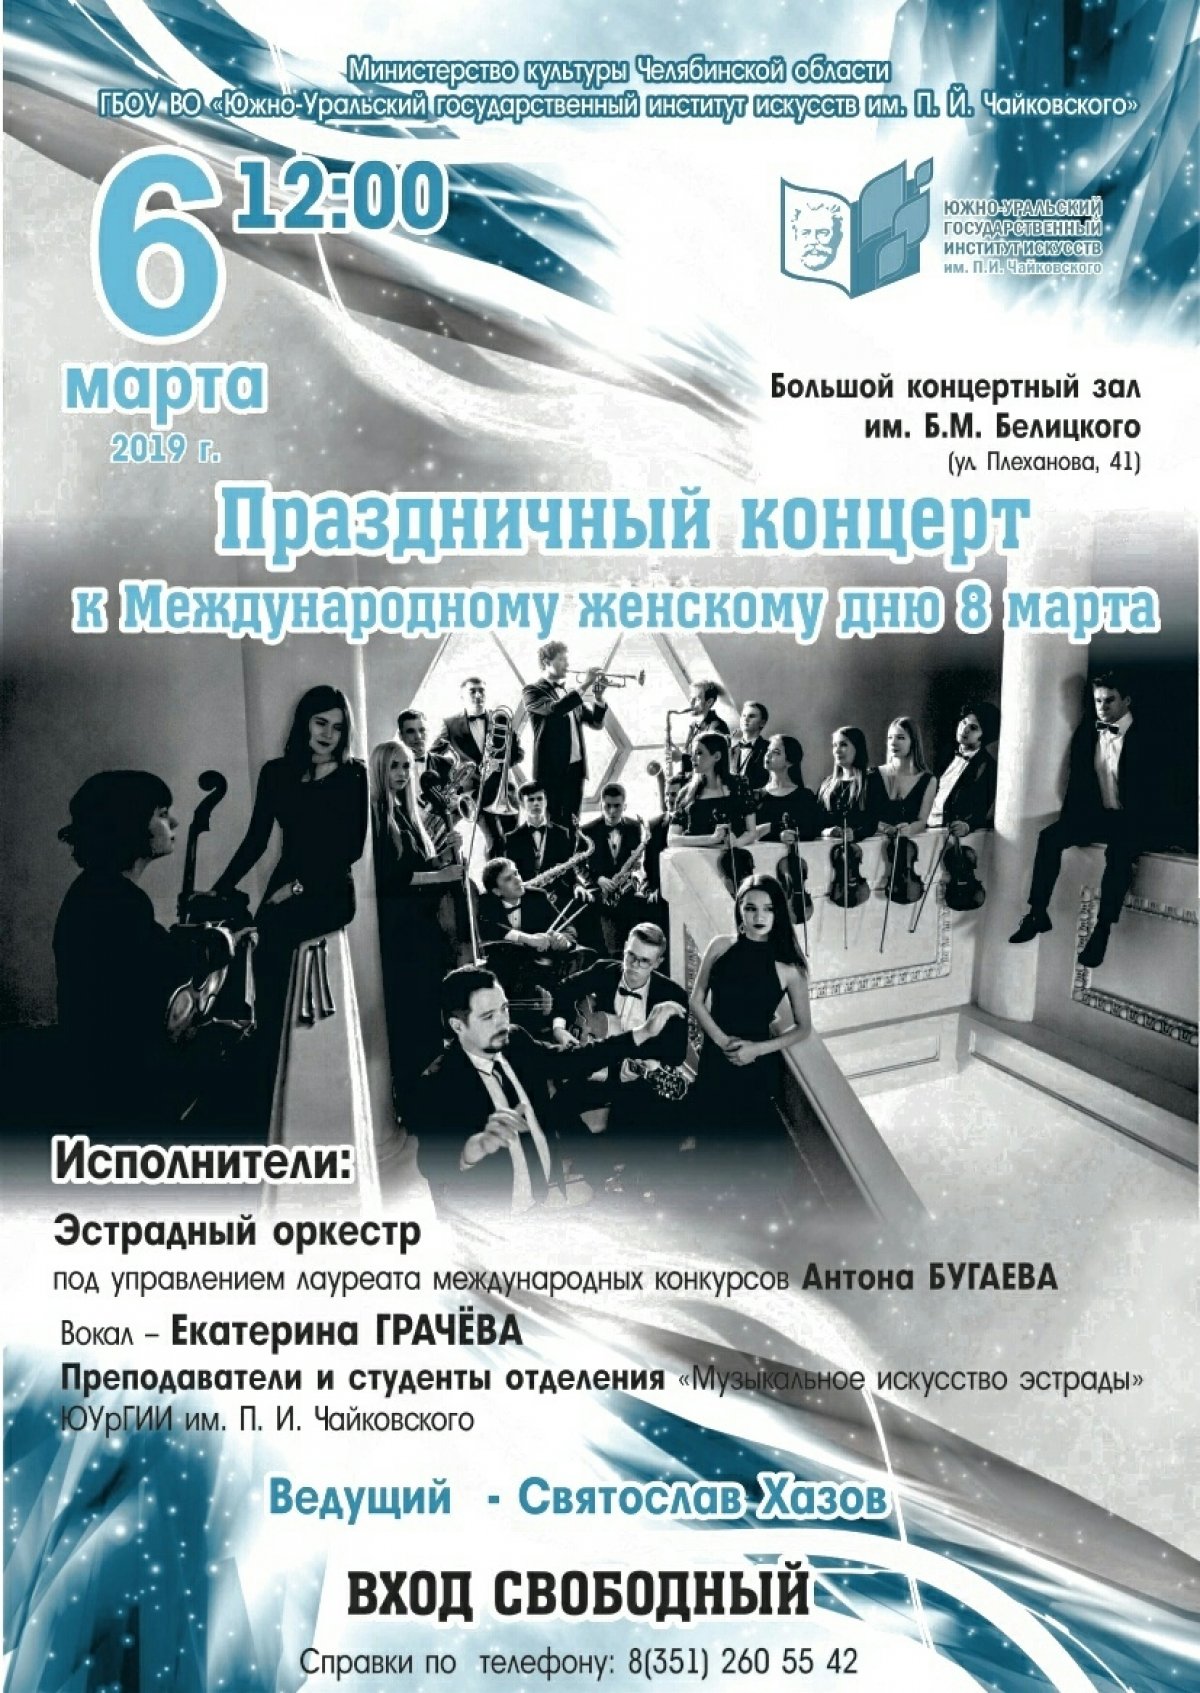 6 марта в 12.00 в Большом концертном зале им. Б. М. Белицкого состоится концерт